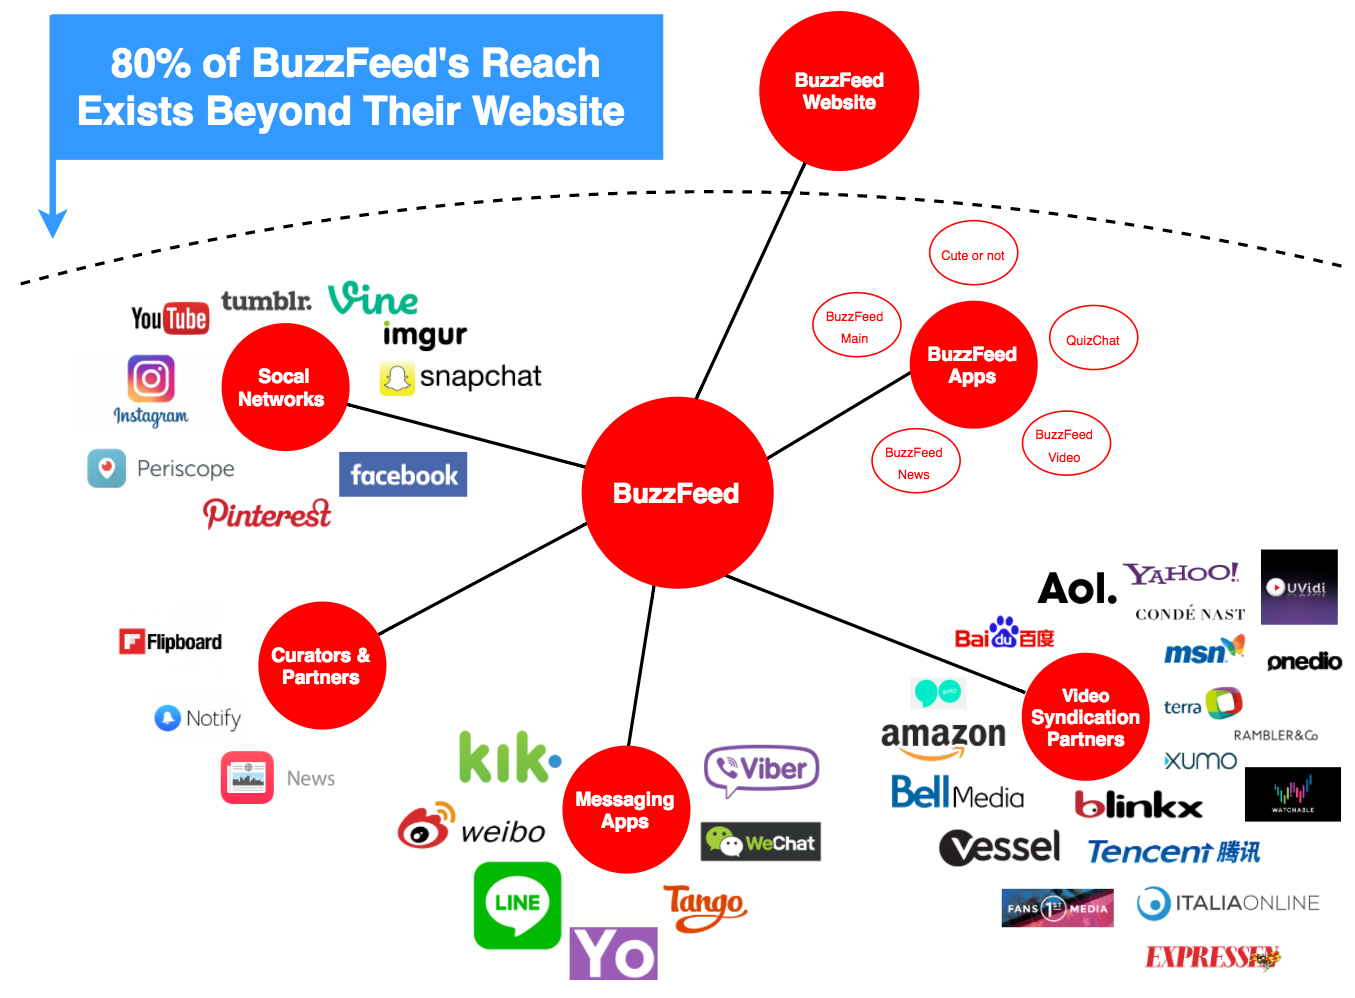 BuzzFeed's reach